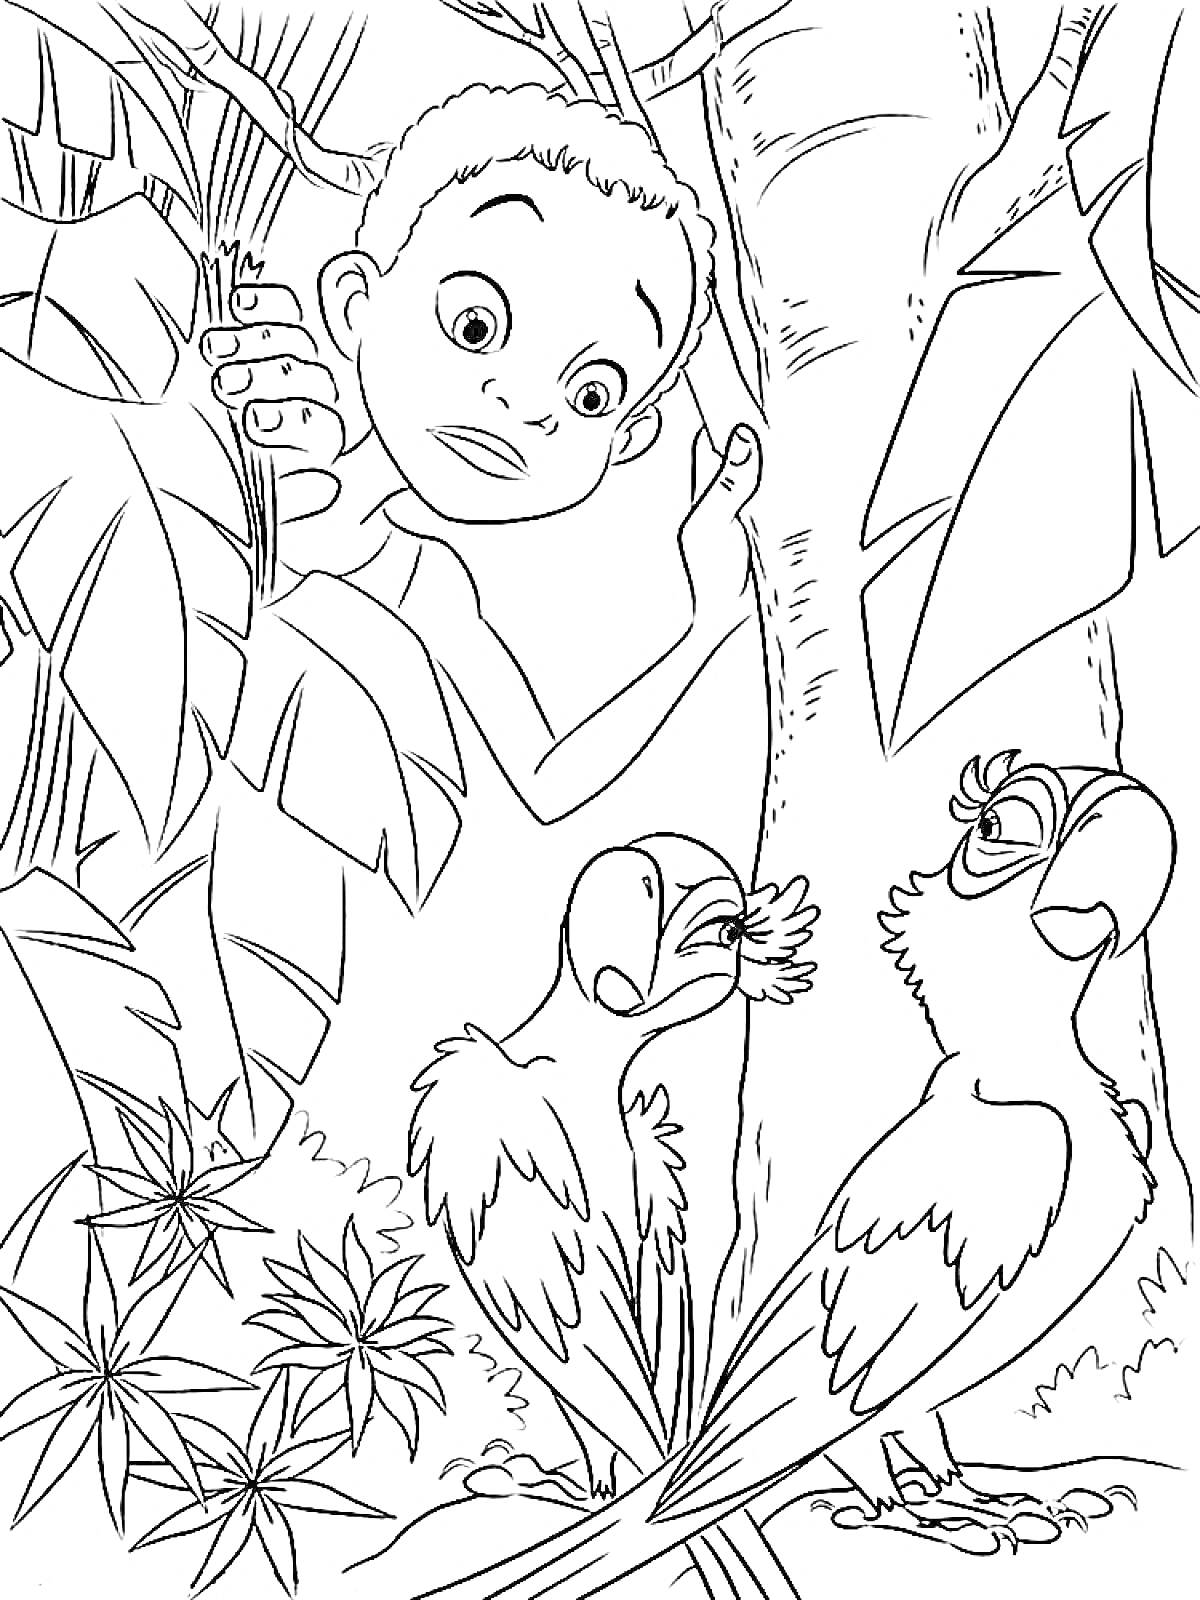 Мальчик заглядывает из-за листвы, наблюдая за двумя попугаями в джунглях